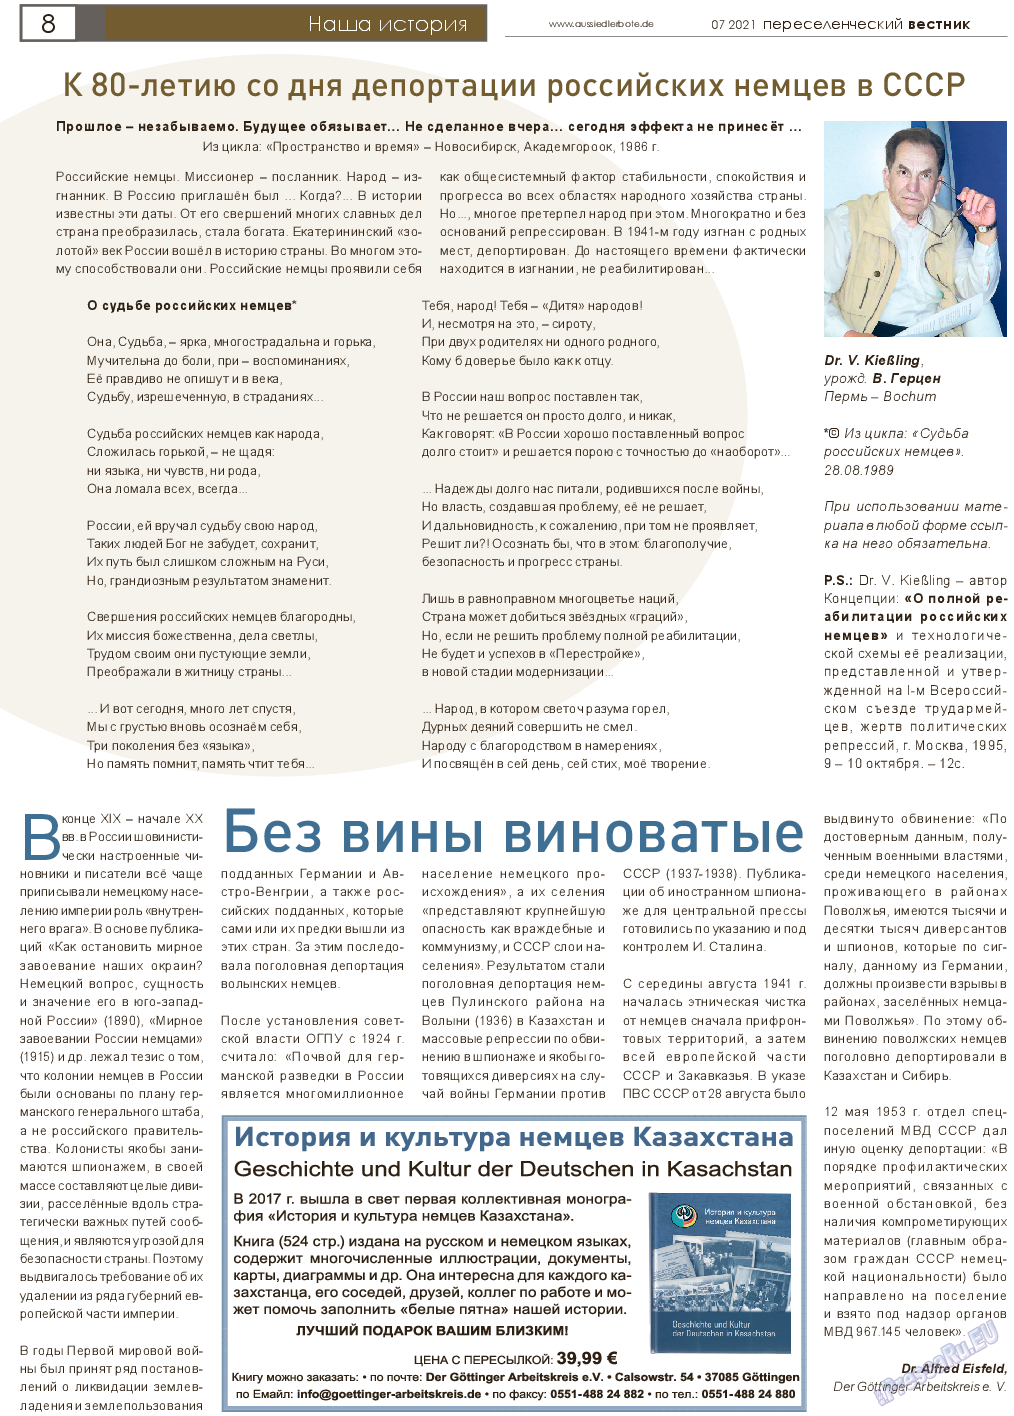 Переселенческий вестник, газета. 2021 №7 стр.8